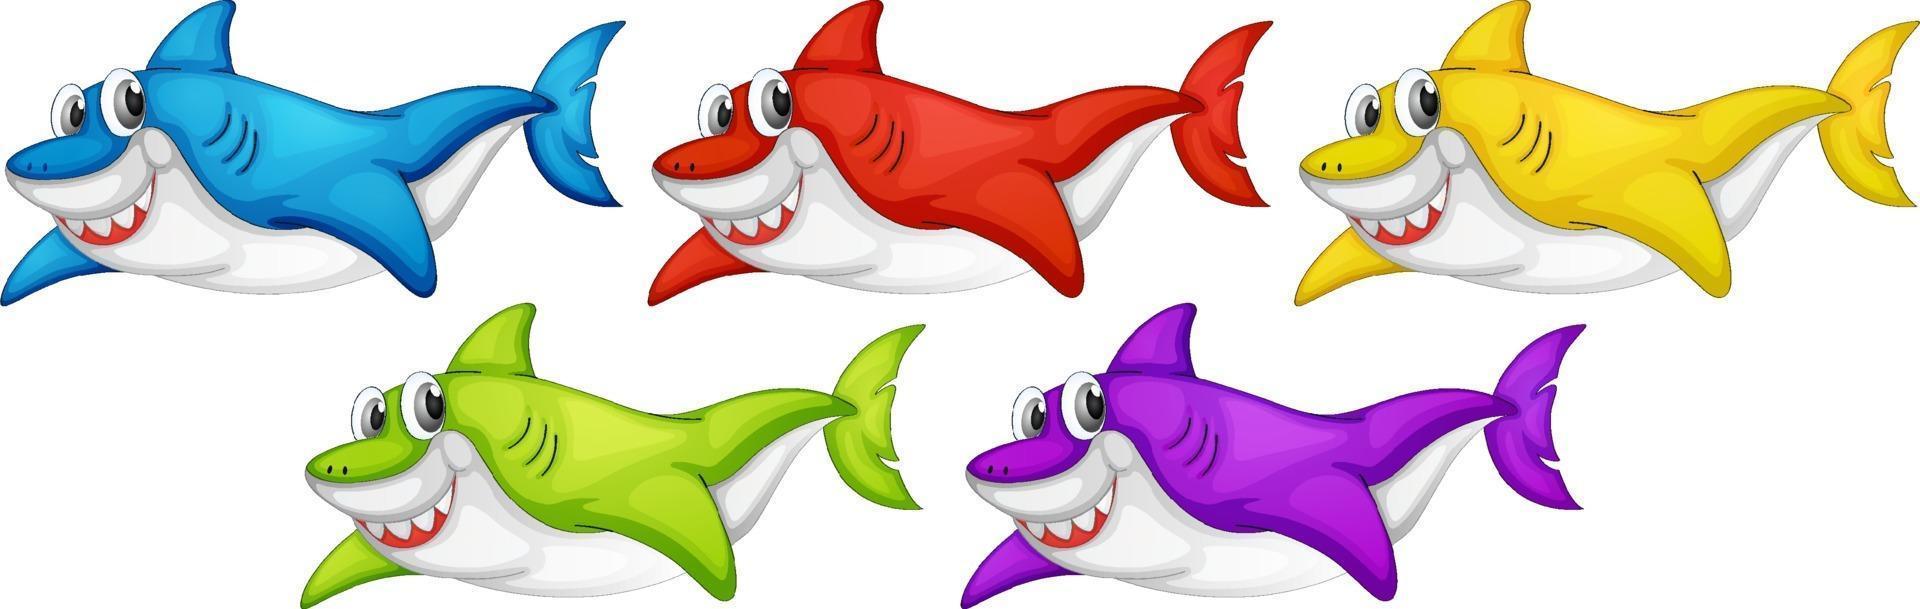 Conjunto de muchos personajes de dibujos animados de tiburón lindo sonriente aislado sobre fondo blanco. vector